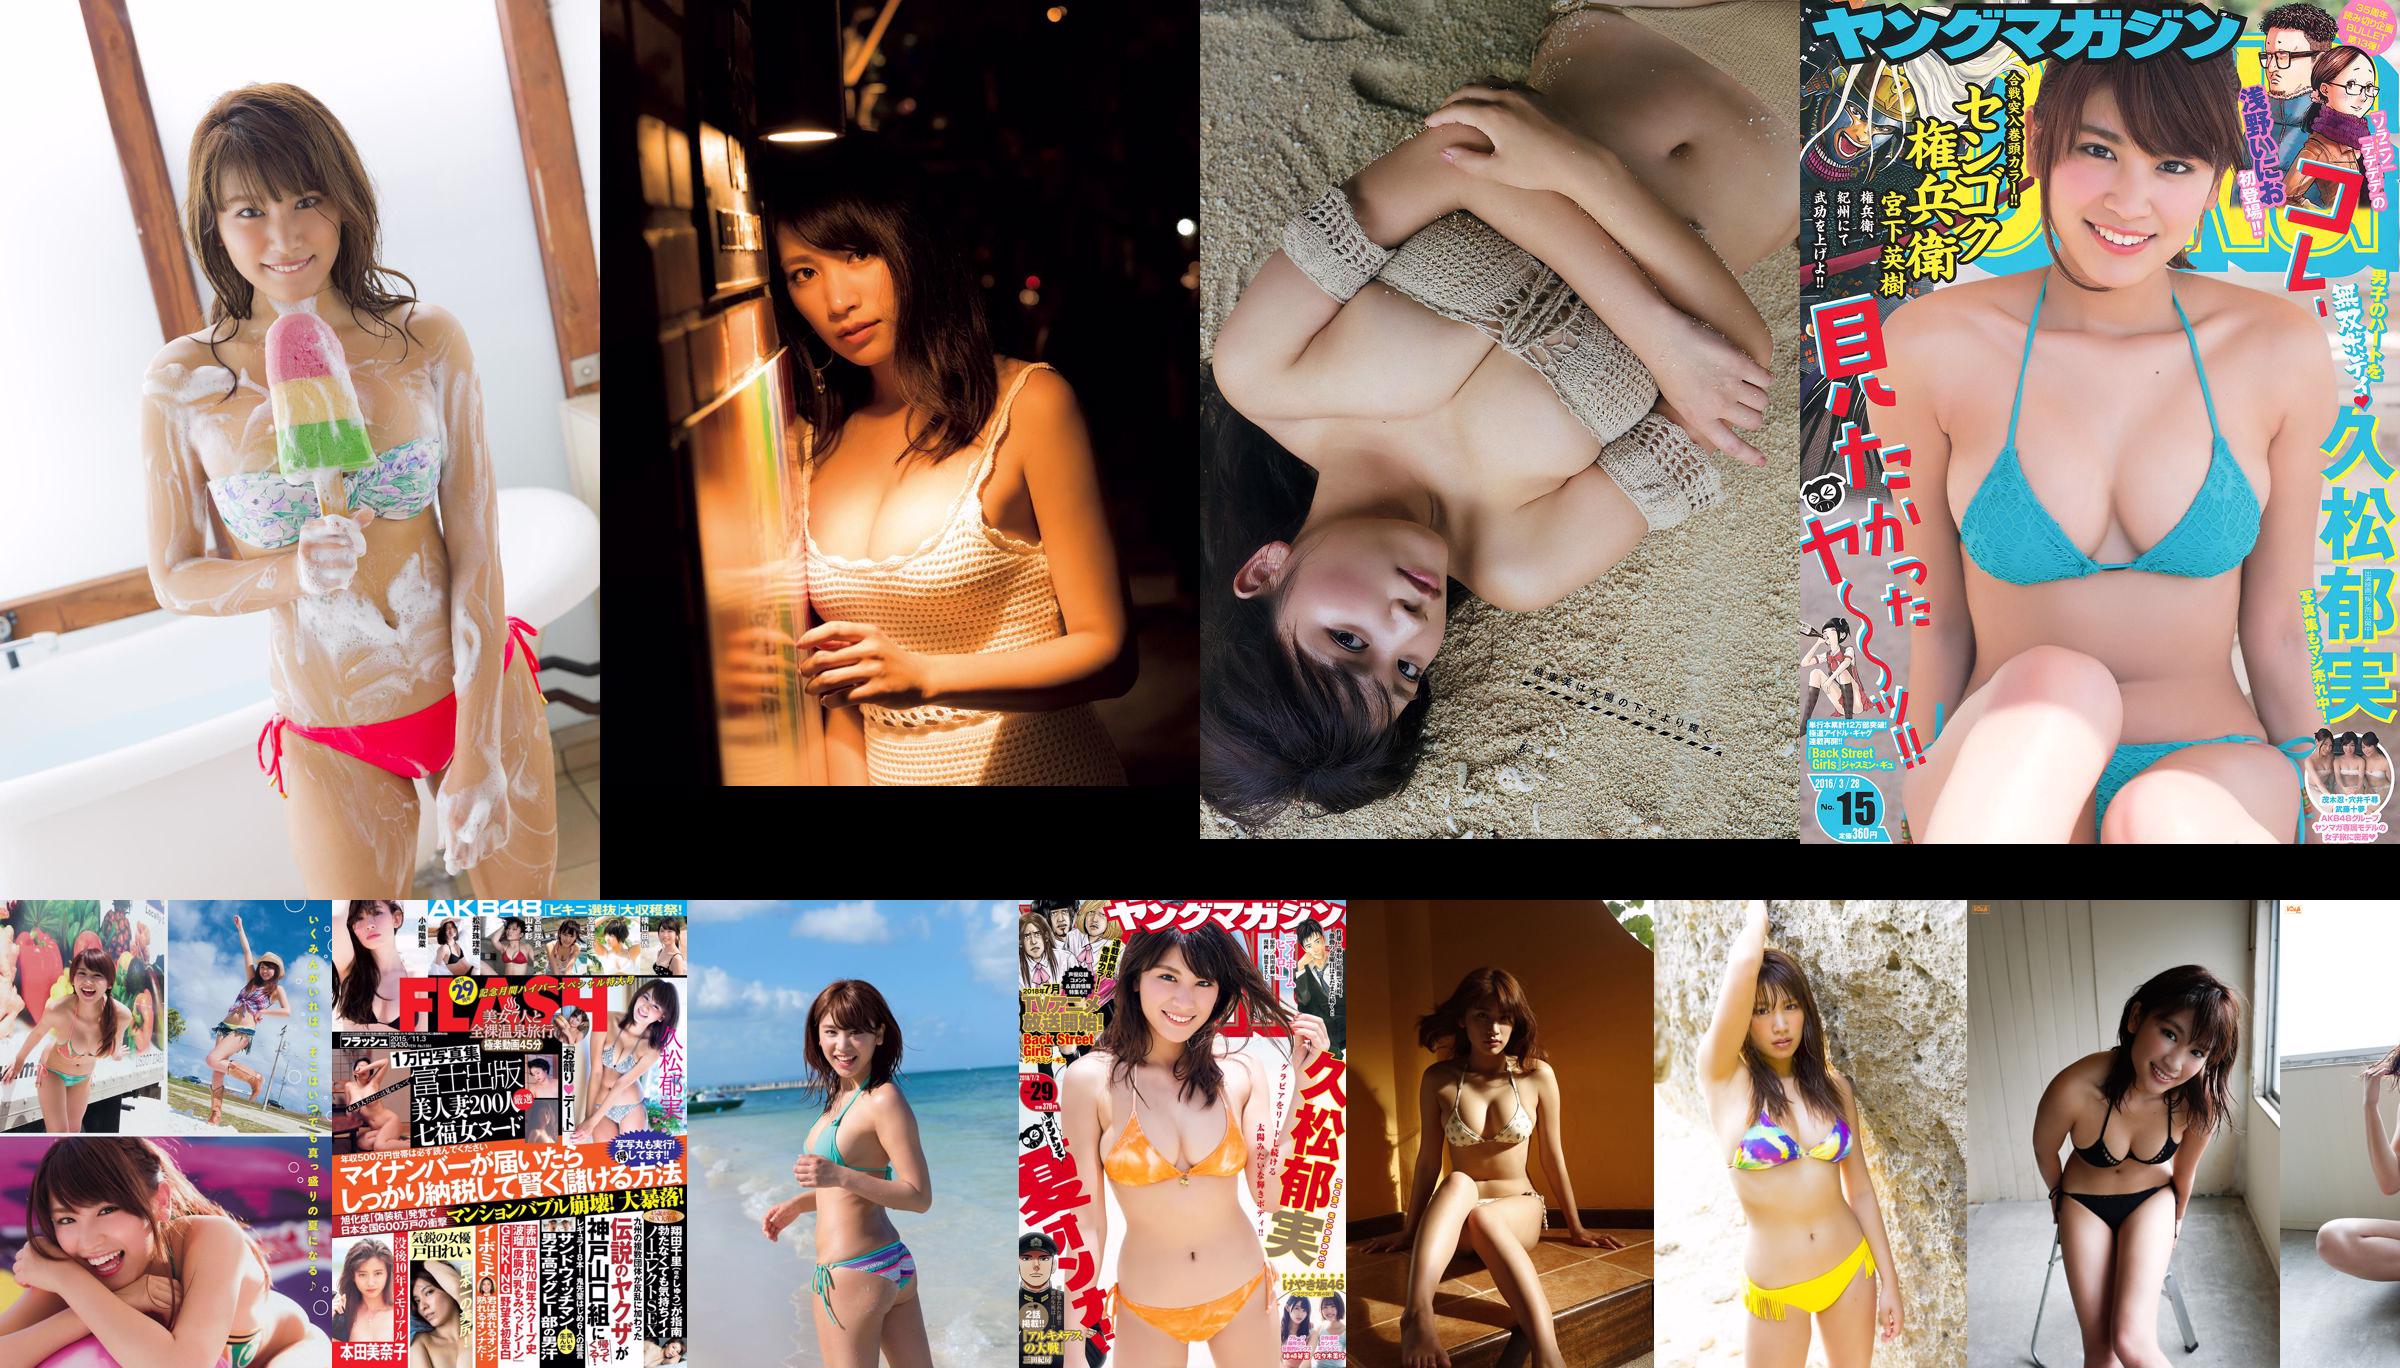 [Revista Young] Ikumi Hisamatsu Airi Sato 2018 Fotografia Nº 49 No.805c61 Página 6